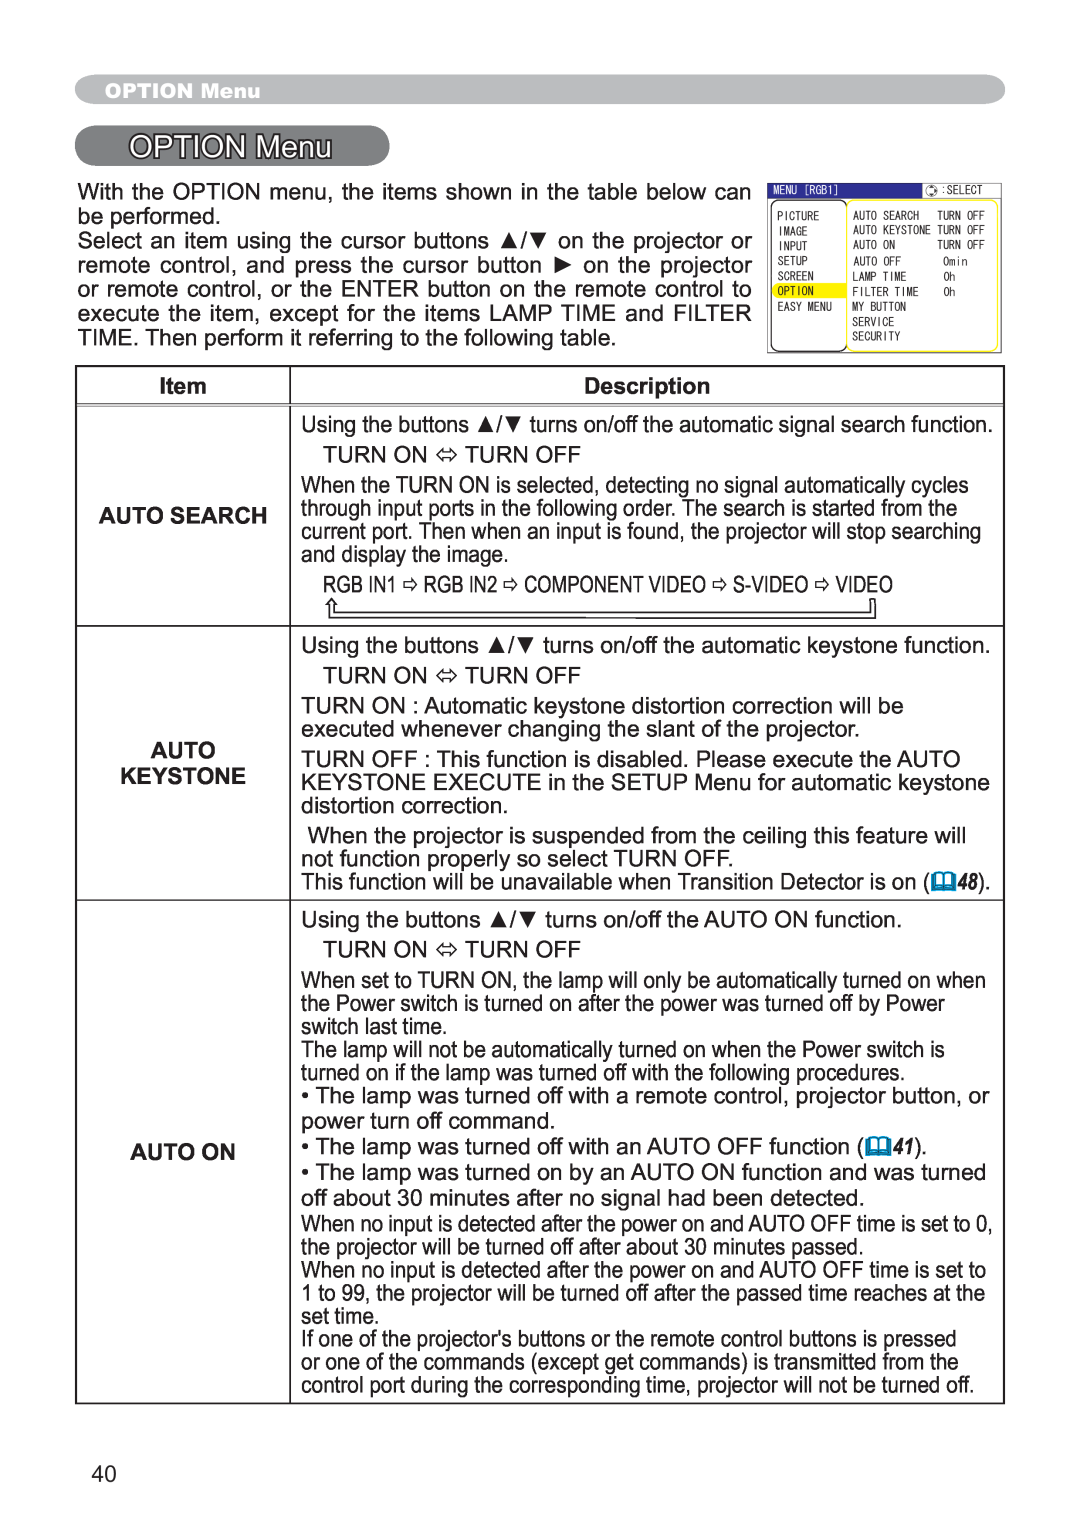 Hitachi CP-X251 user manual OPTION Menu, Description, Auto Search, Keystone, Auto On 